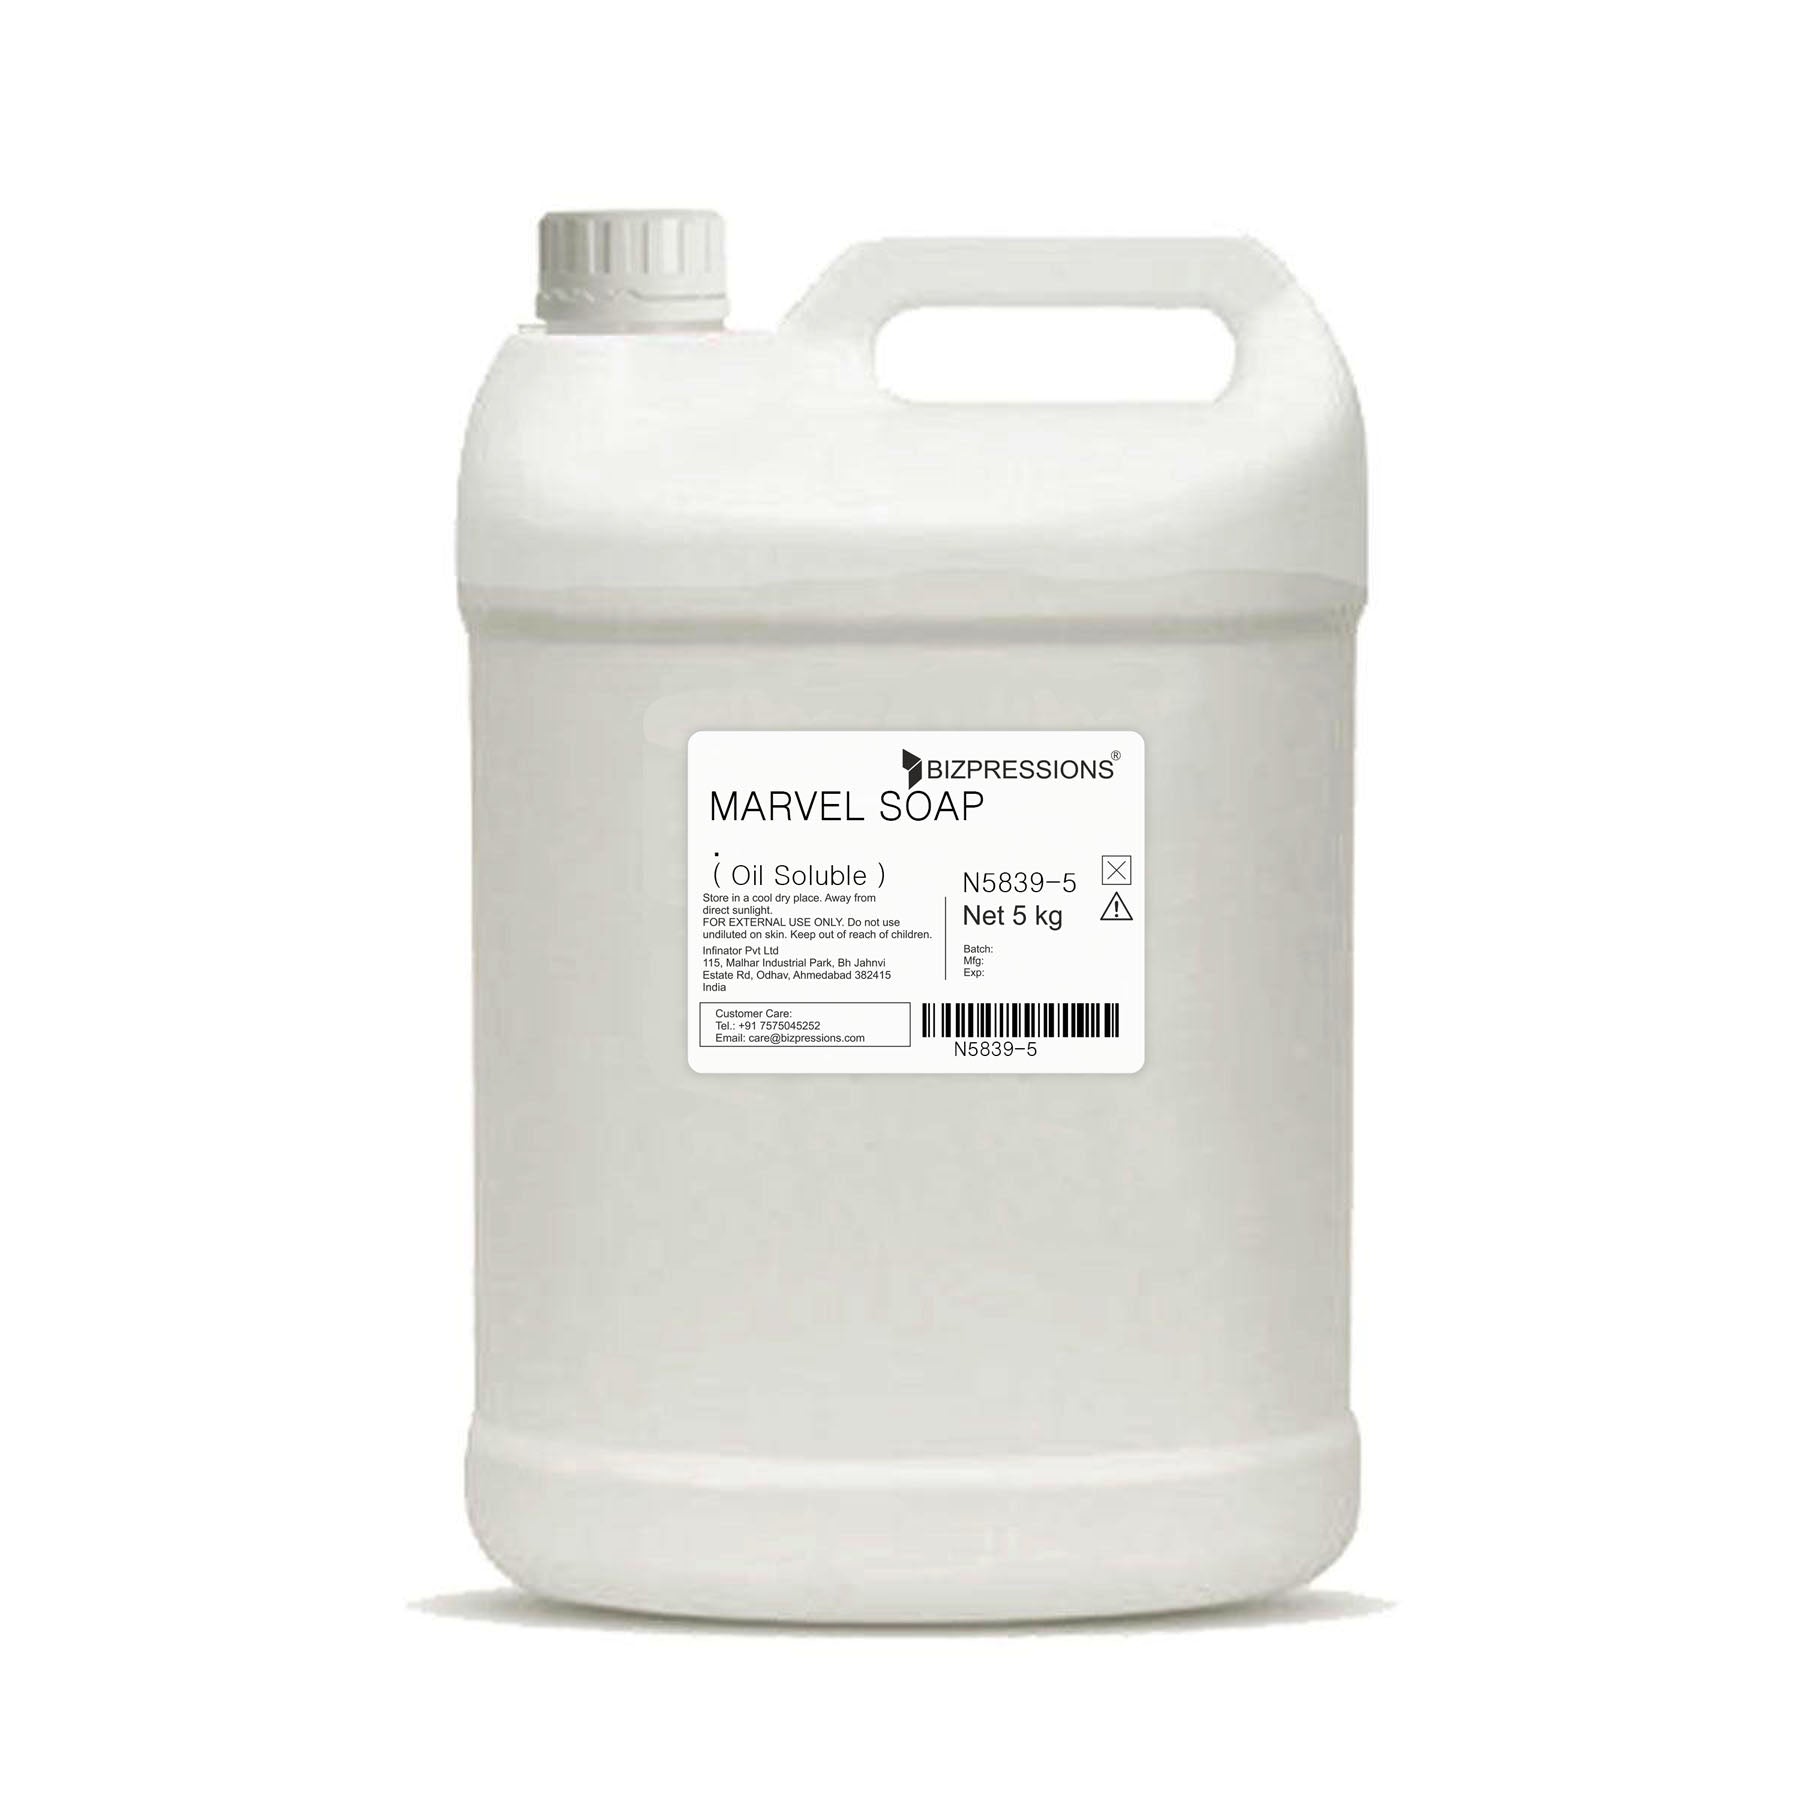 MARVEL SOAP - Fragrance ( Oil Soluble ) - 5 kg